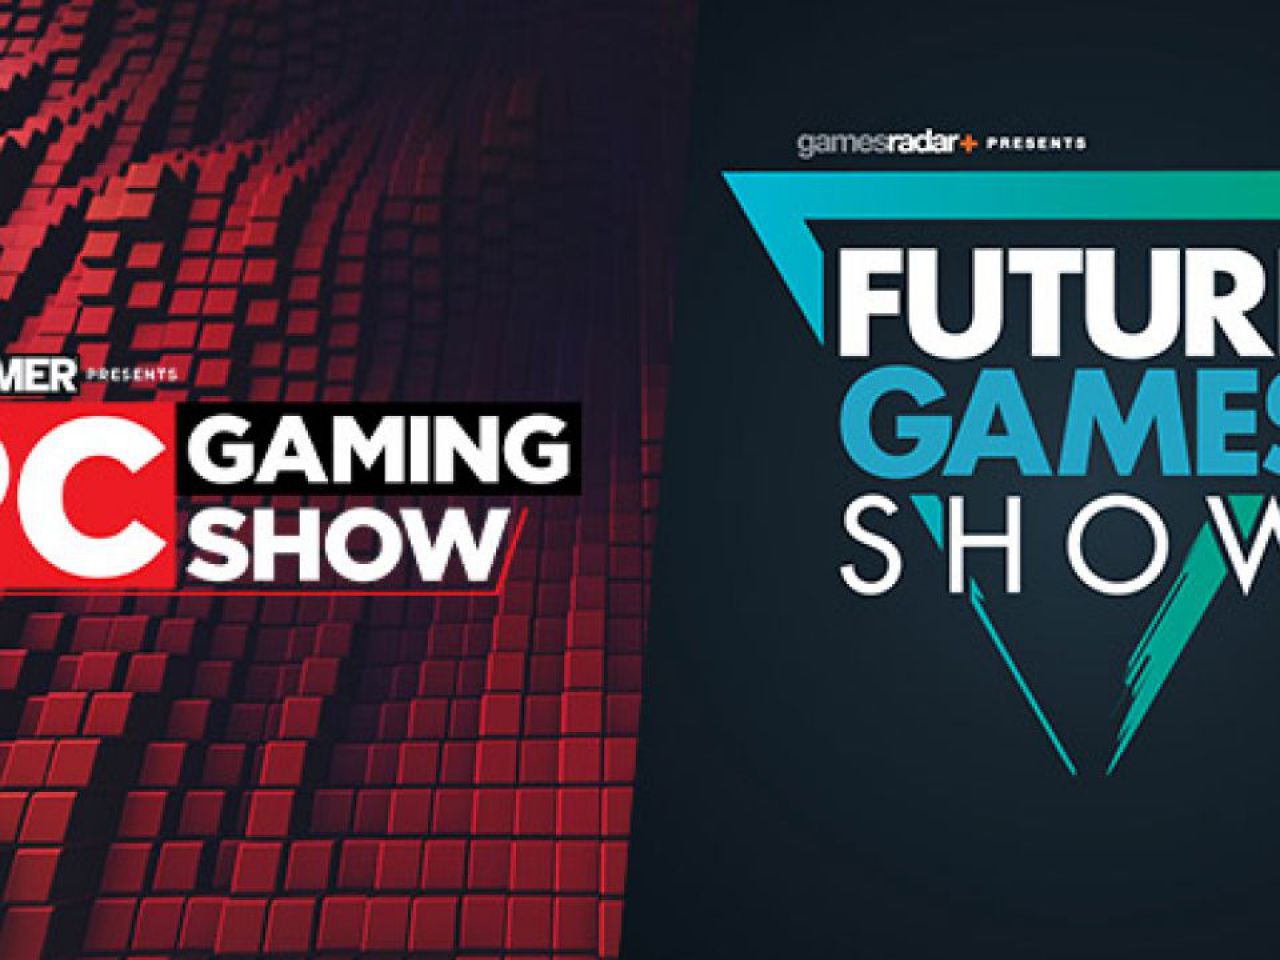 Future gaming show. Future games show. Future games show logo. Future game show 2022 logo. Future Gamer.